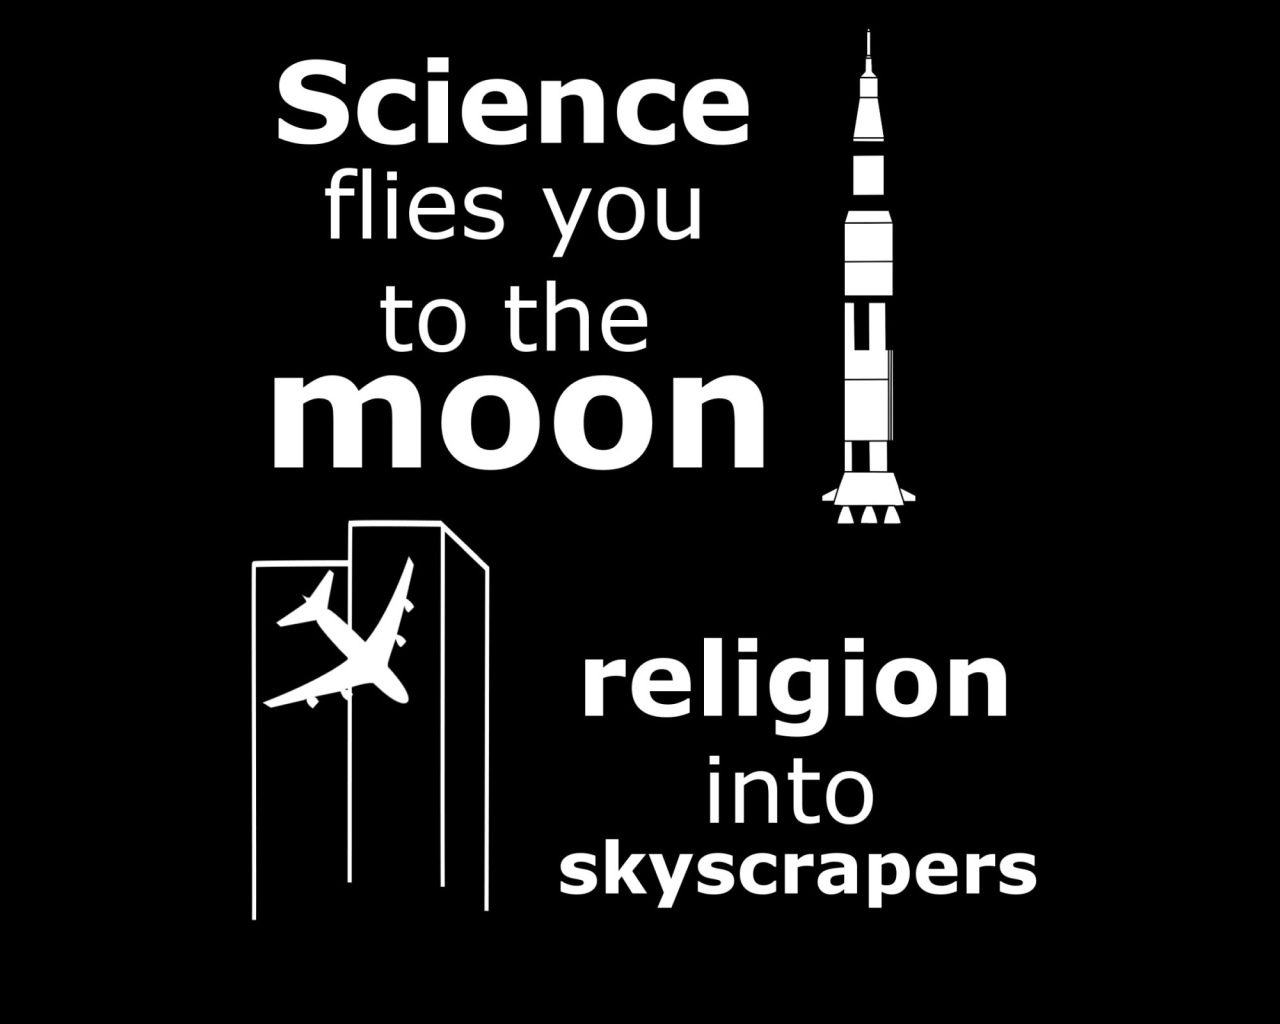 Наука приведет тебя к звездам, религия в небоскребы